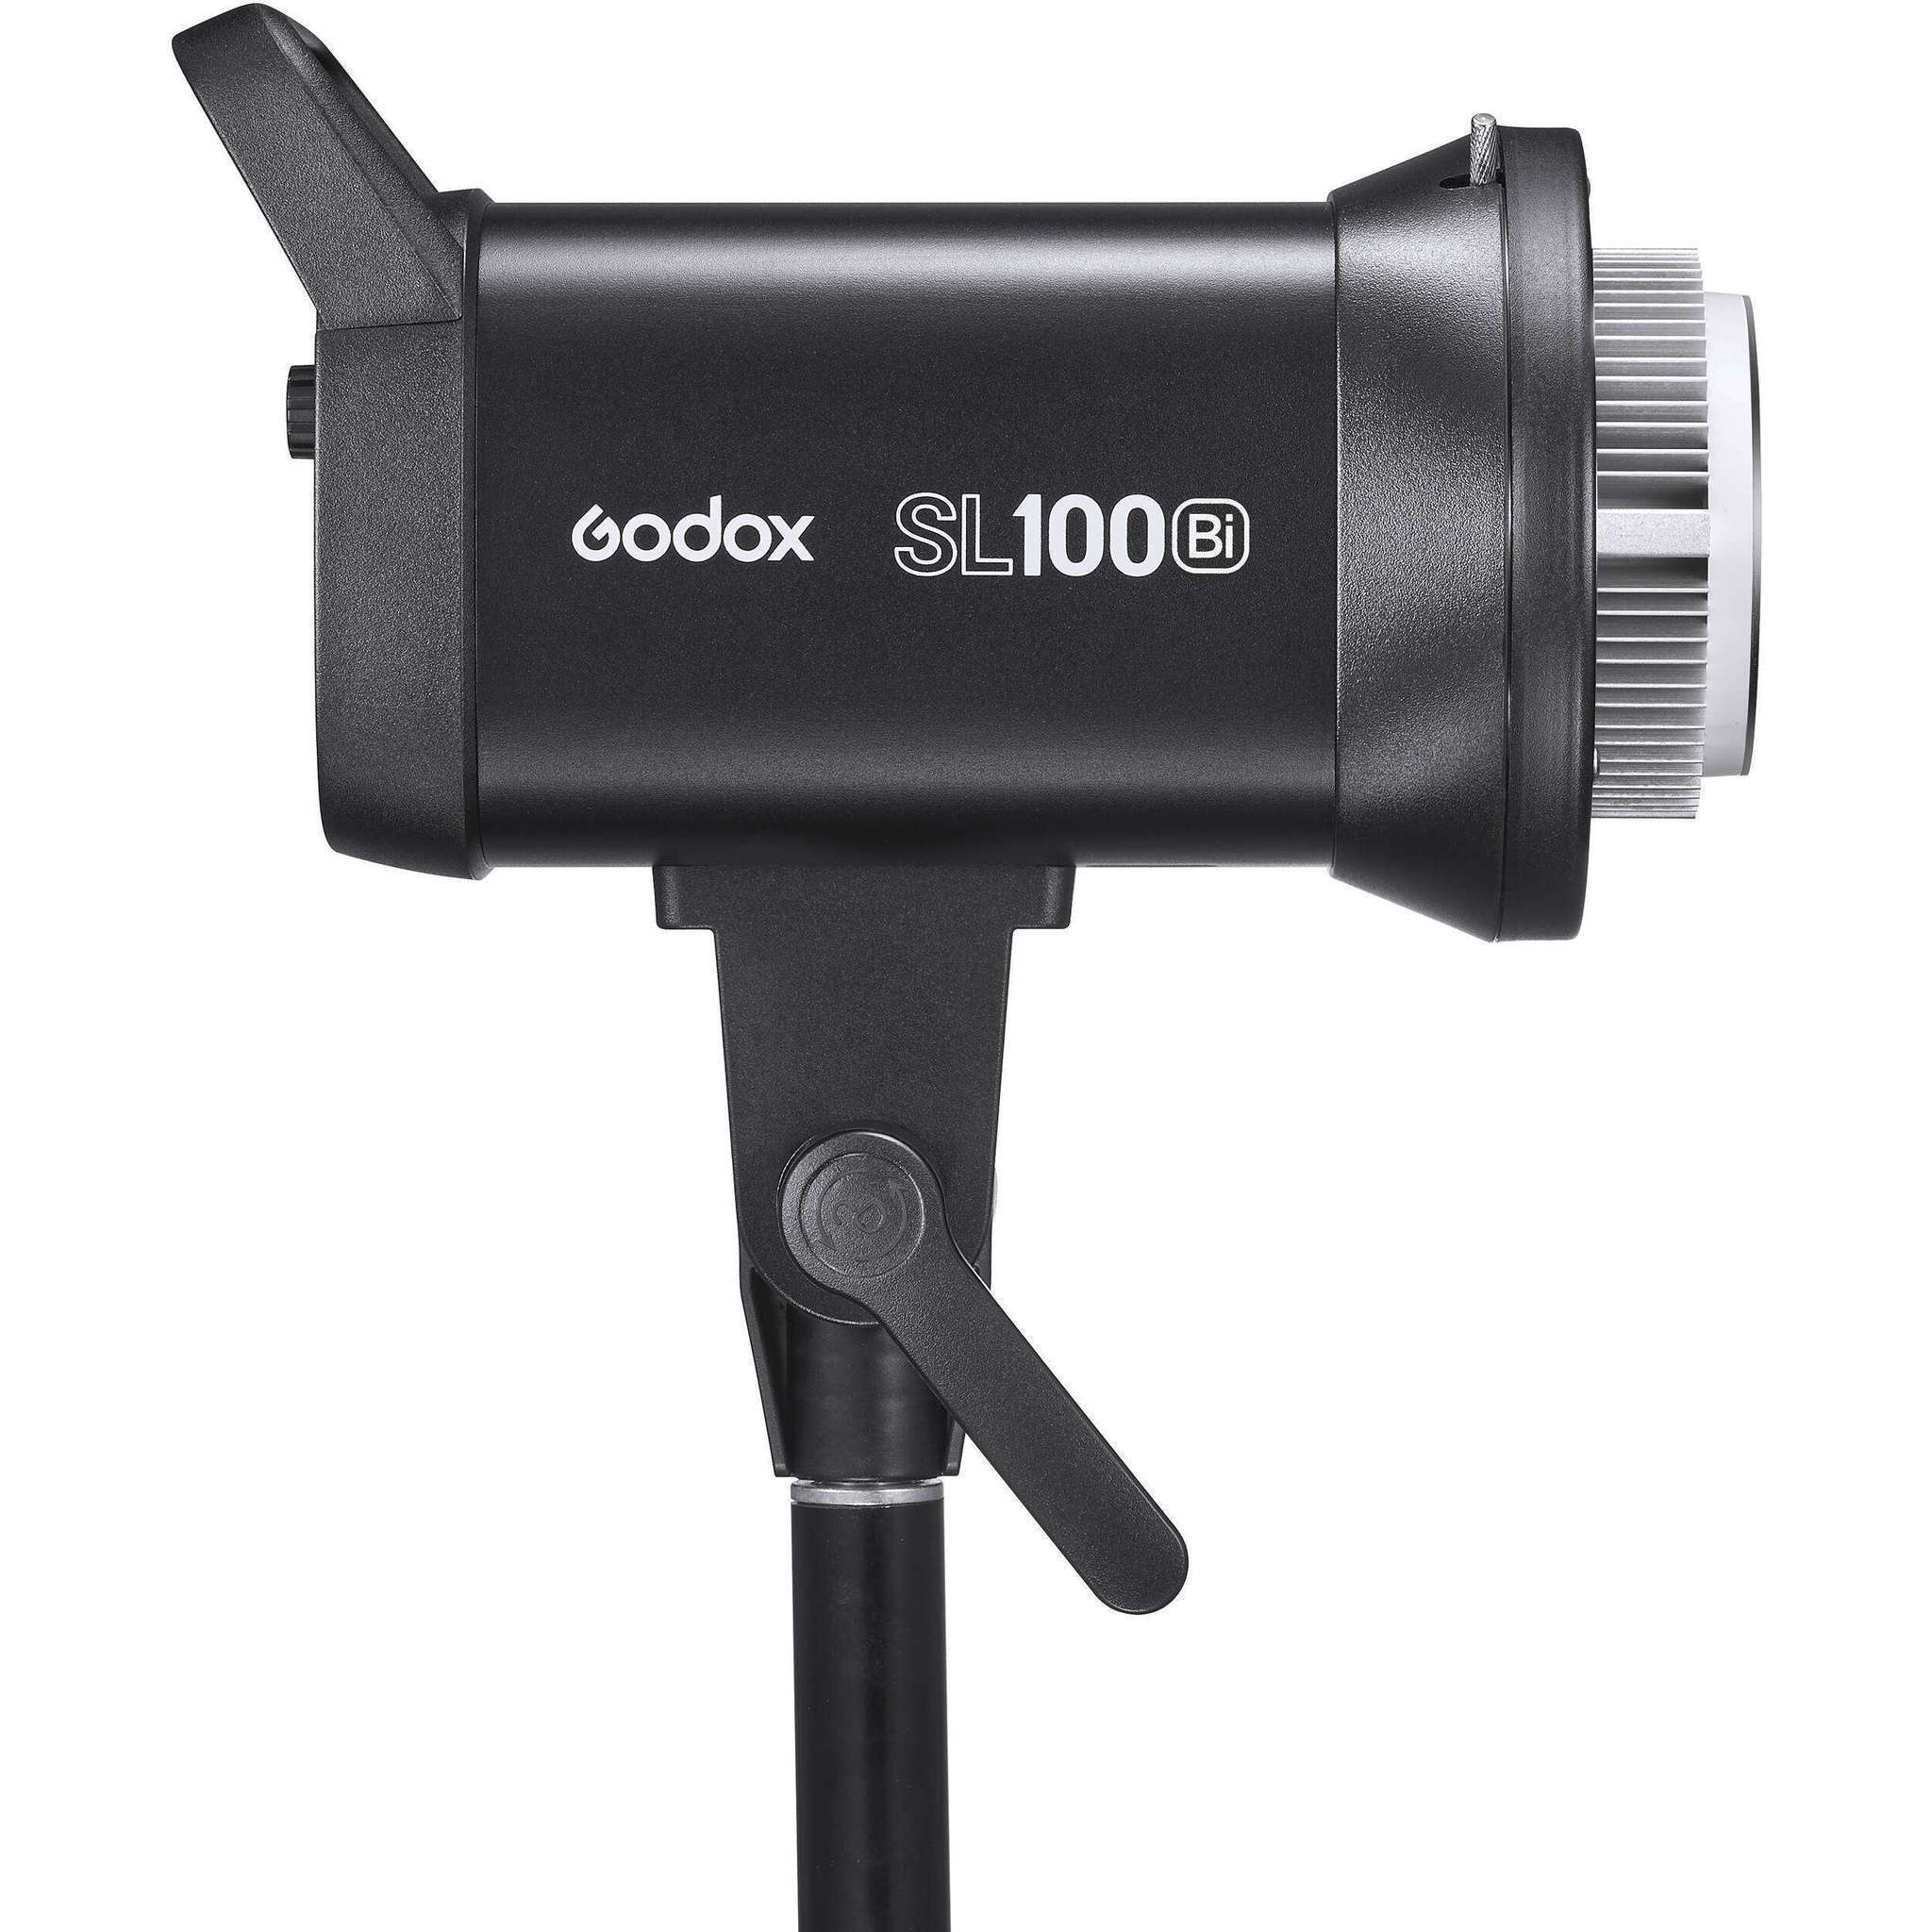    Godox SL100Bi     Ultra-mart